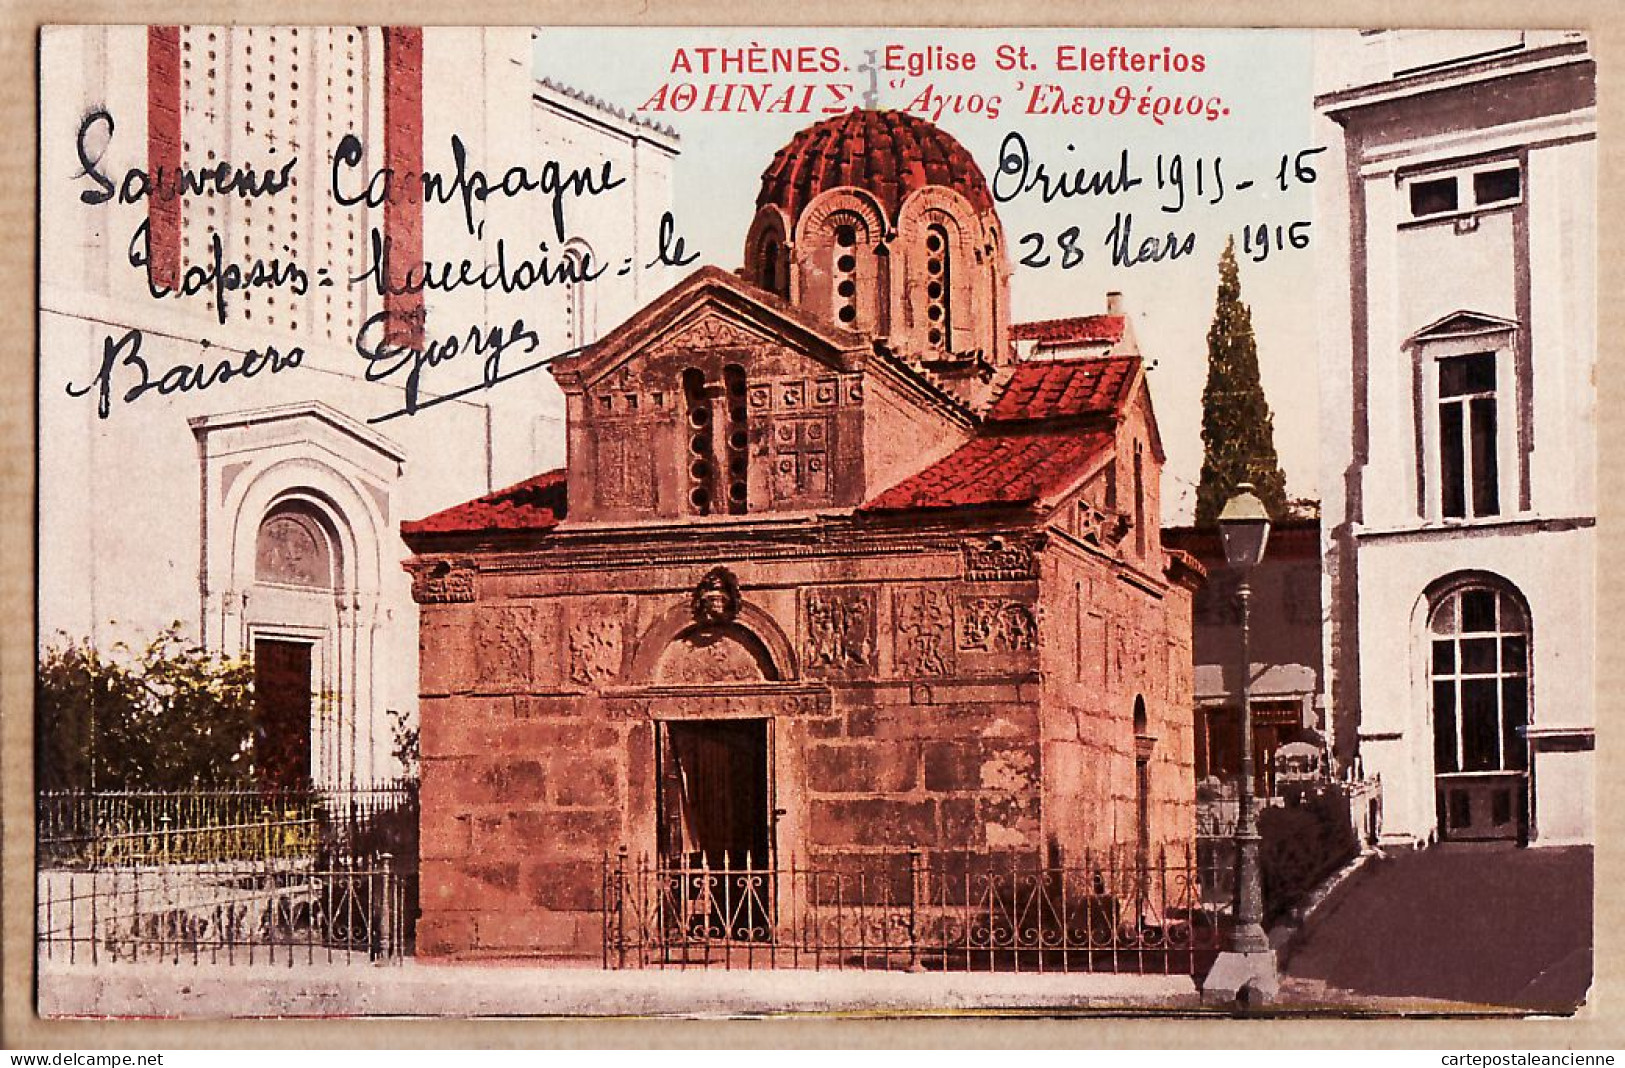 06404 / Lisez Souvenir De CAMPAGNE ORIENT 1915-16 De TOPSIN Macédoine 28 Mars 1916  ATHENES Eglise ELEFTERIOS CpaWW1 - Grèce